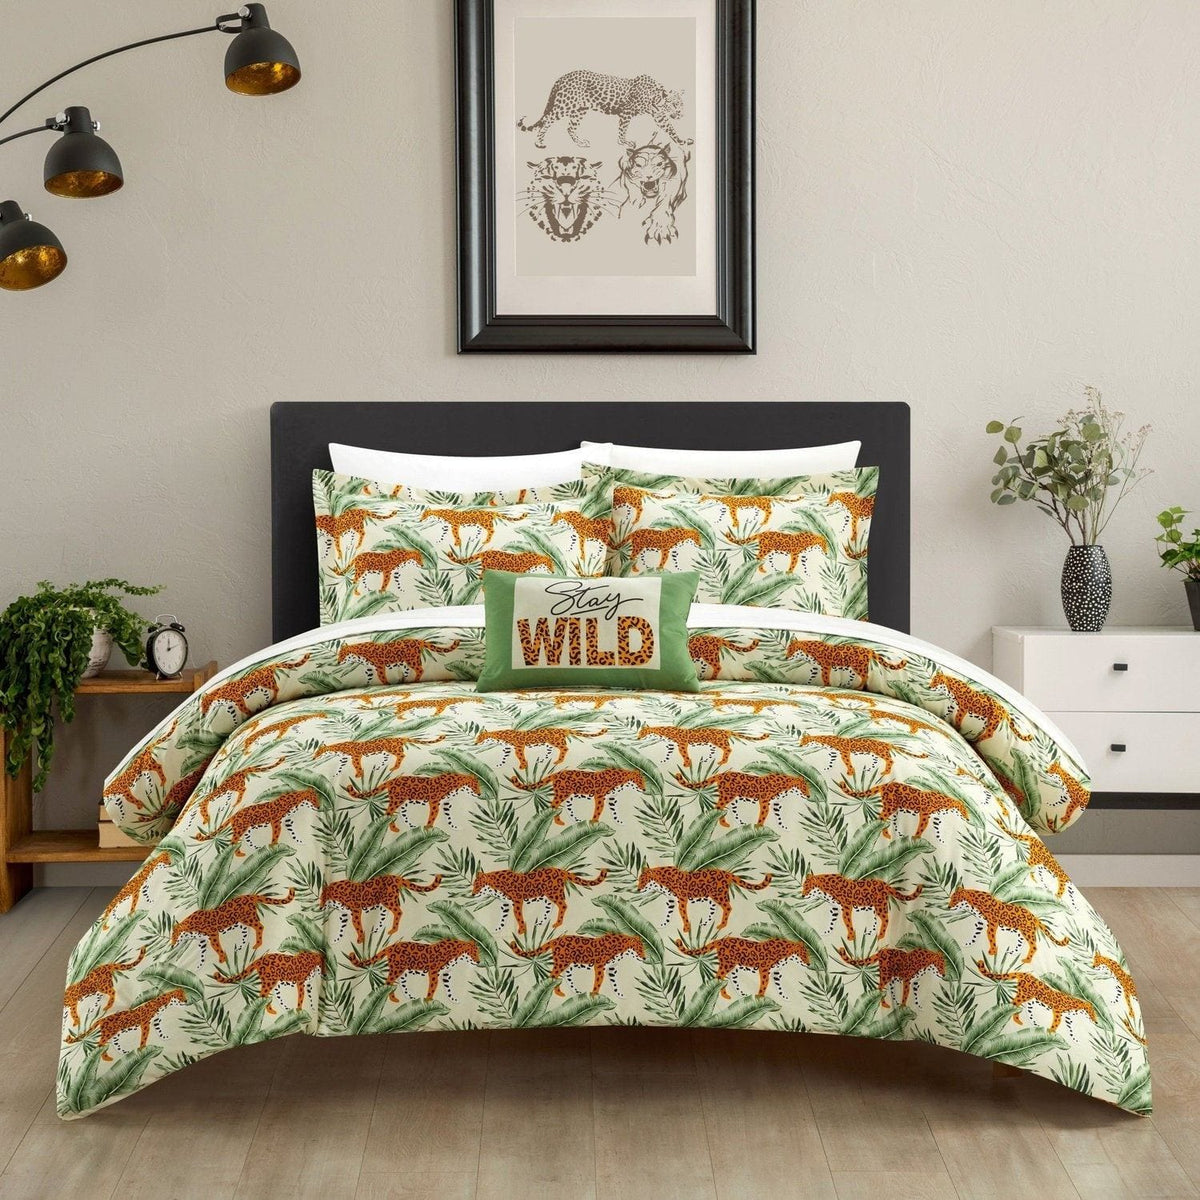 NY&C Home Safari 4 Piece Jungle Print Comforter Set Queen